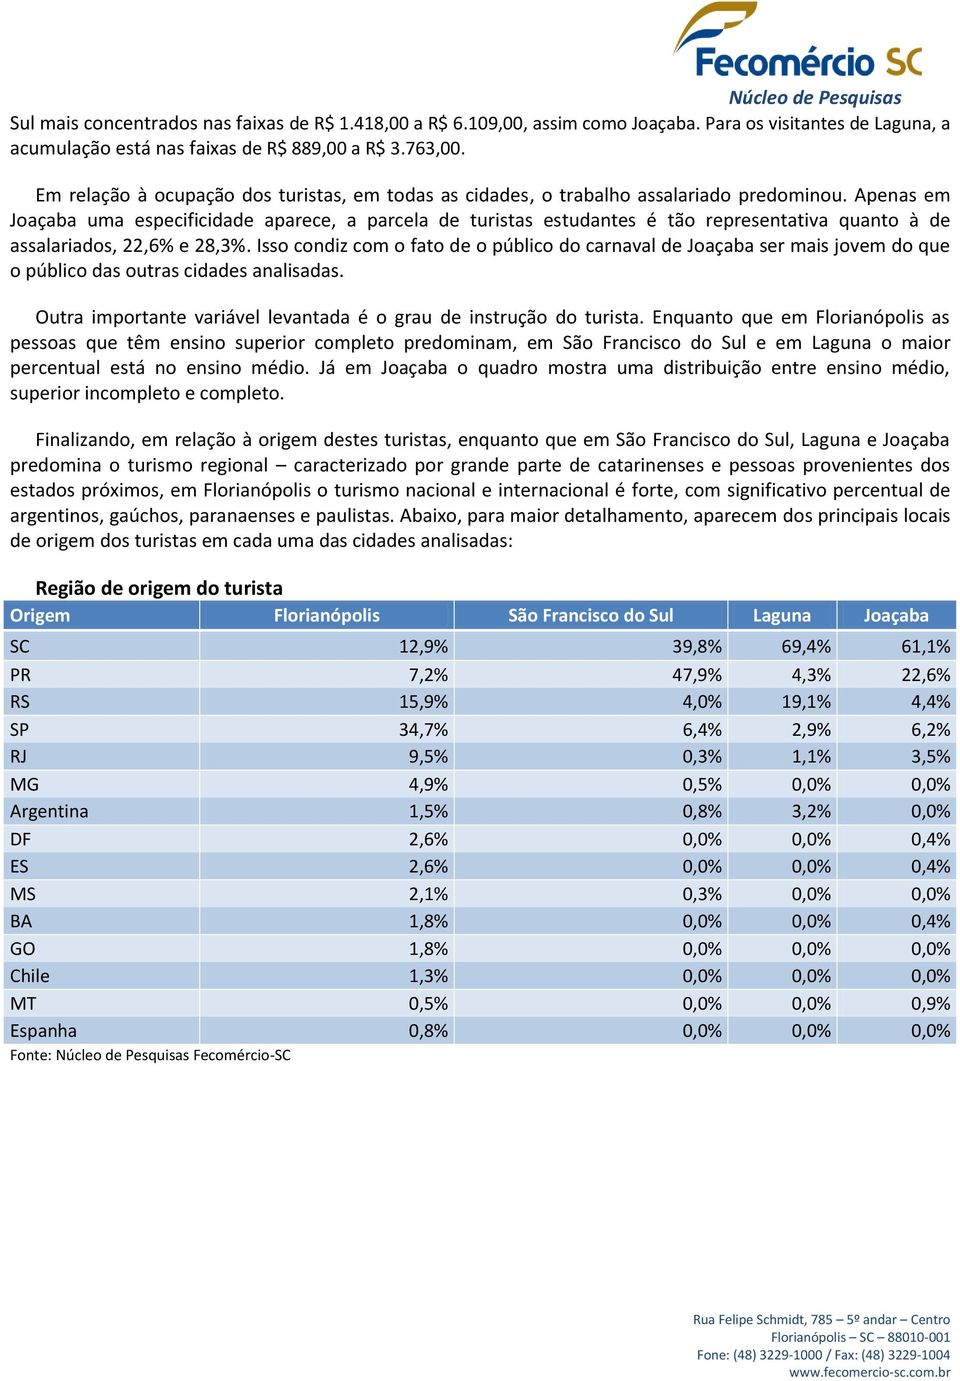 Apenas em Joaçaba uma especificidade aparece, a parcela de turistas estudantes é tão representativa quanto à de assalariados, 22,6% e 28,.